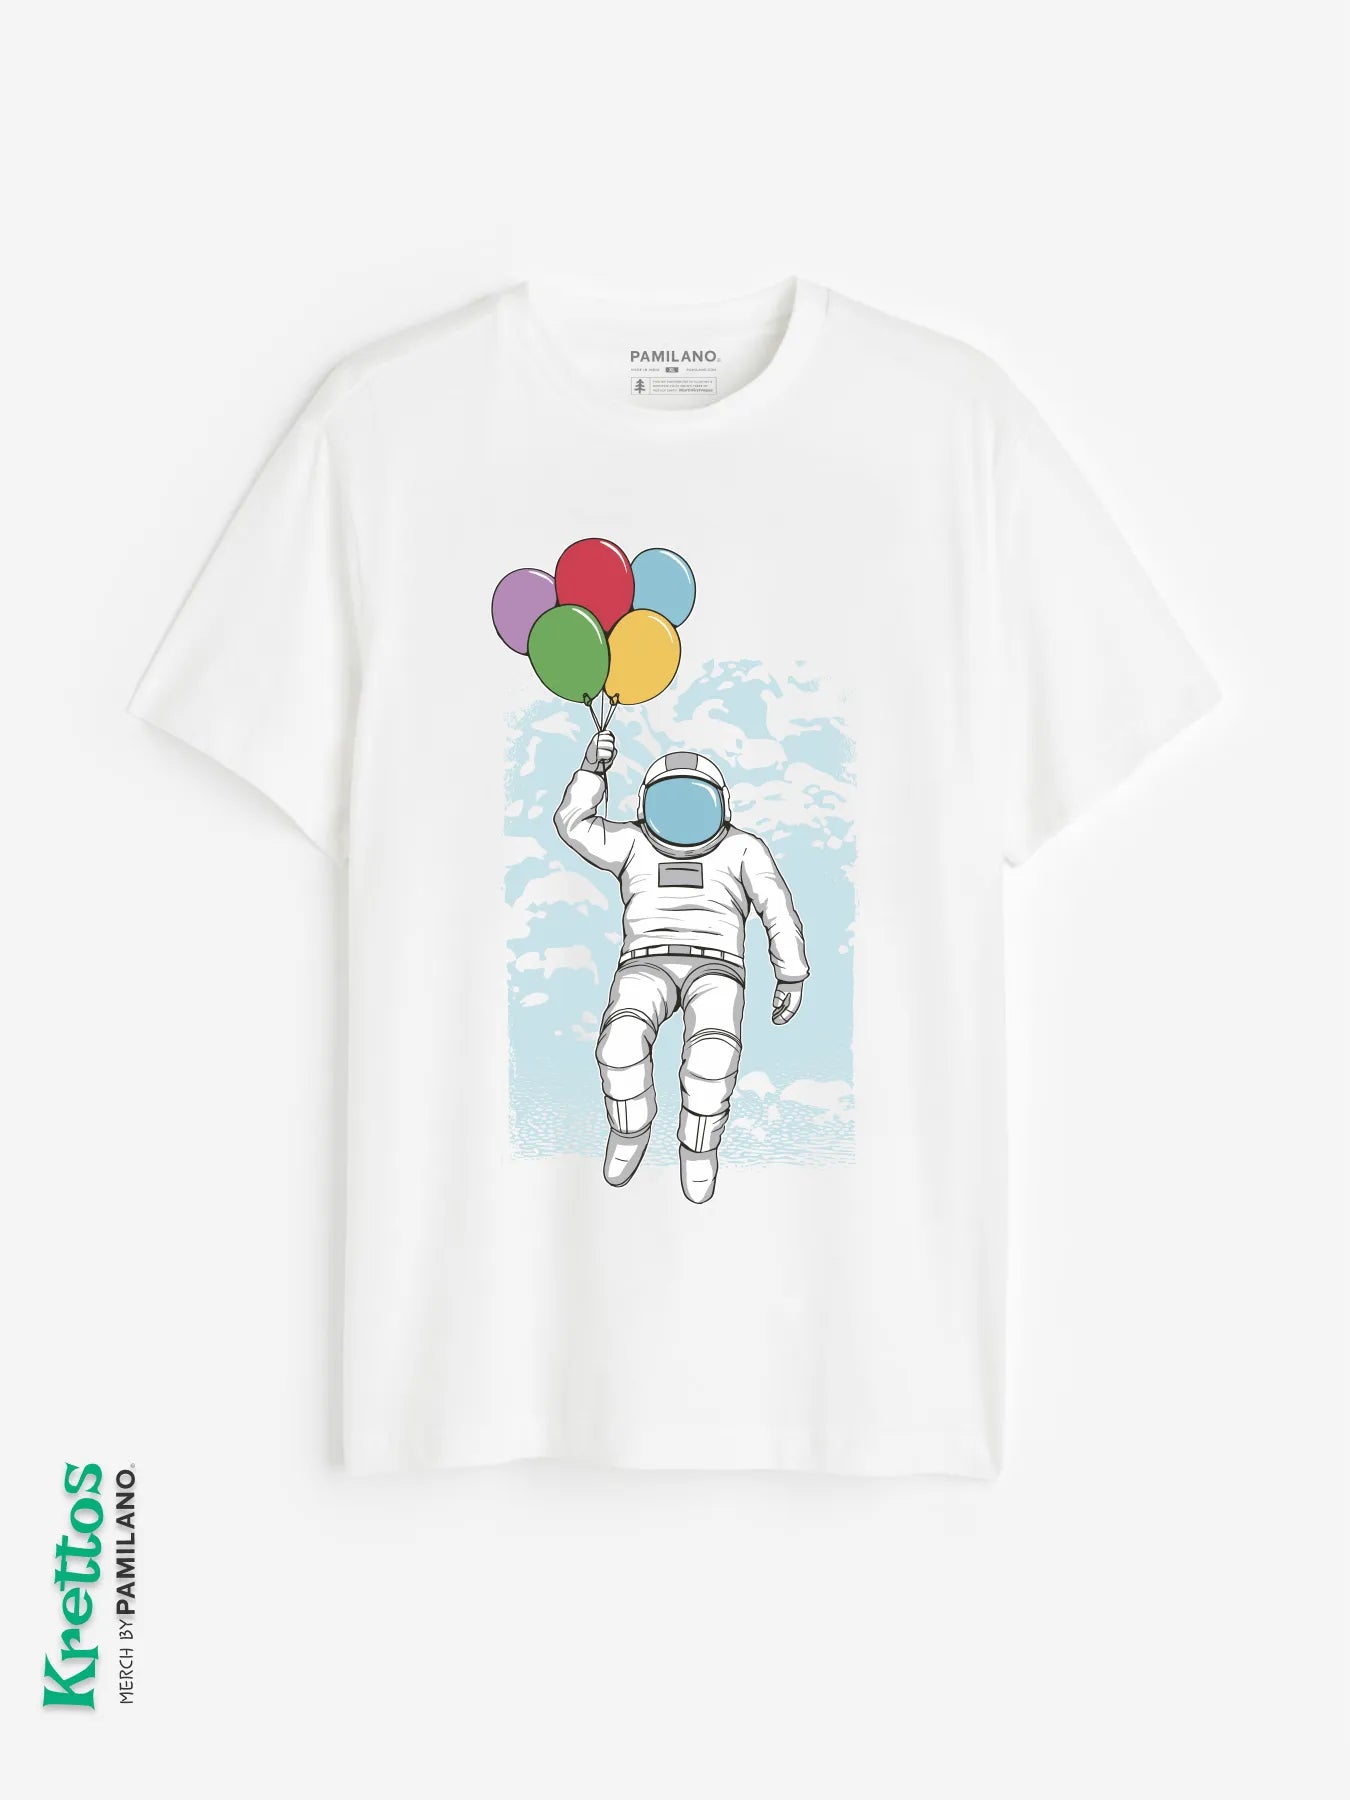 An astronaut & balloons.